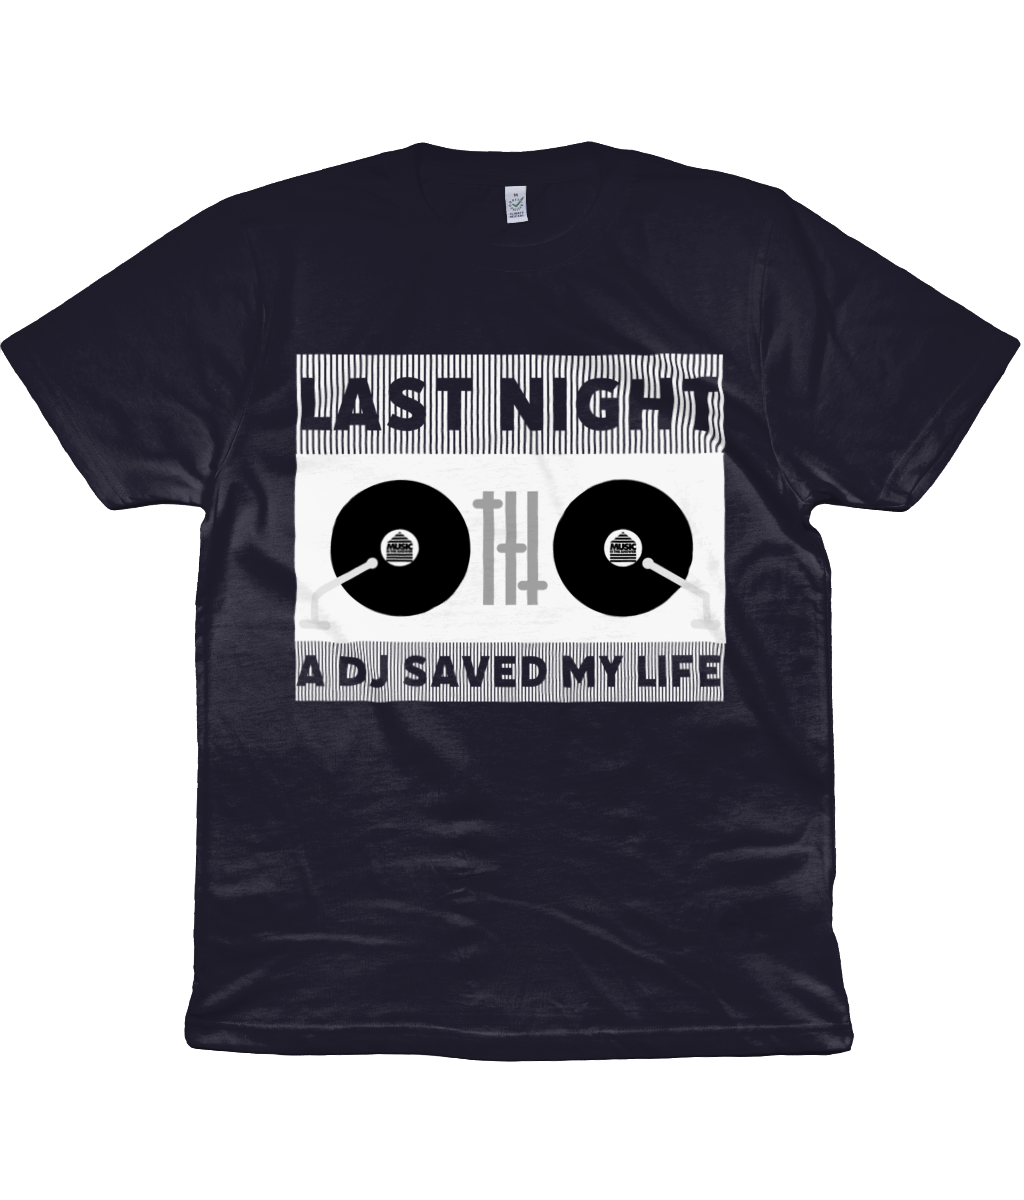 T-Shirt Last Night